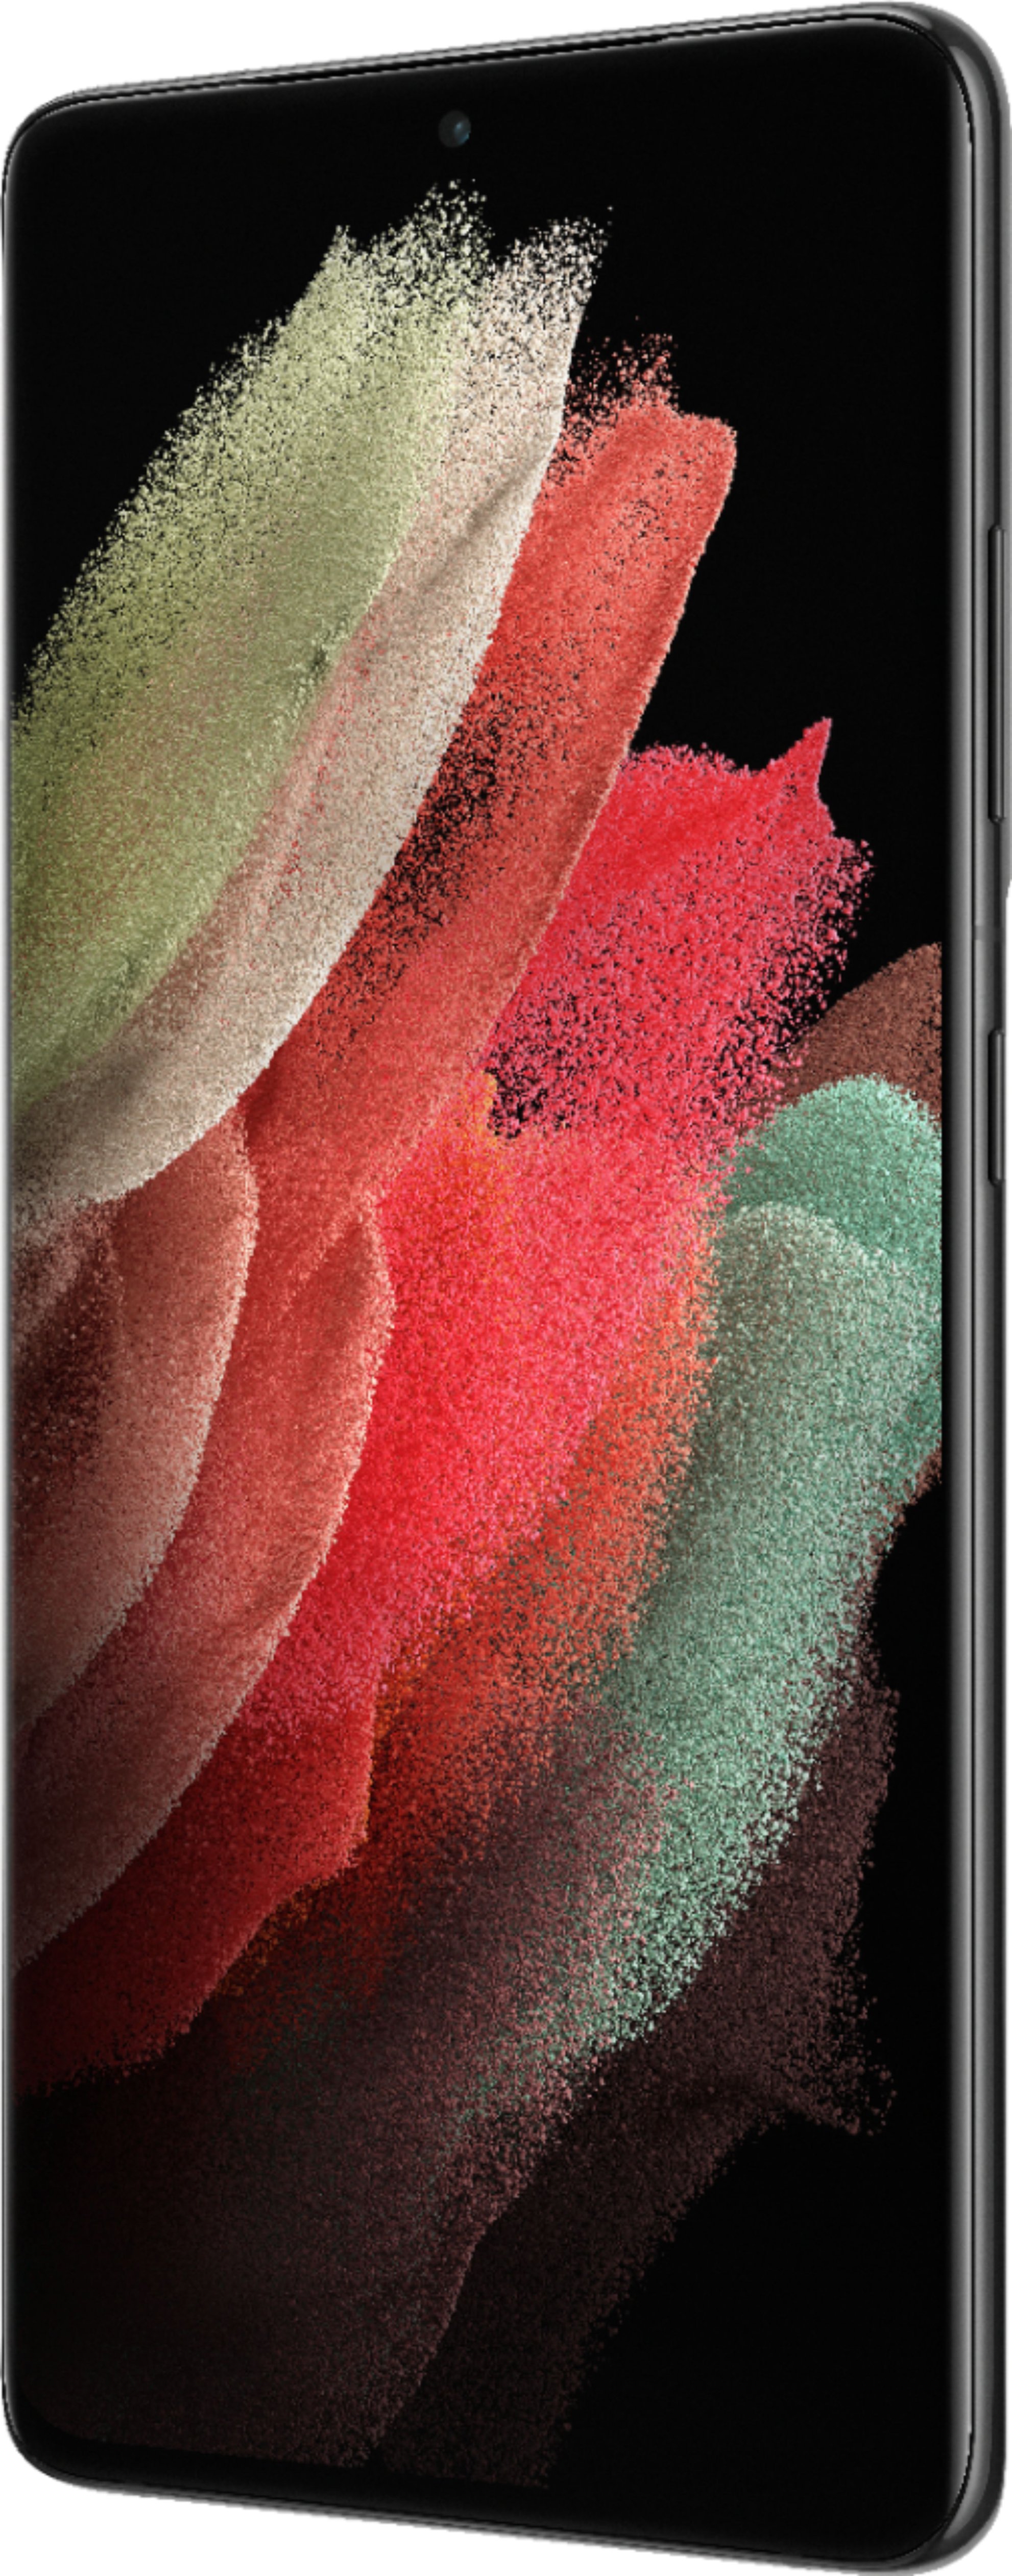 スマートフォン/携帯電話 スマートフォン本体 Best Buy: Samsung Galaxy S21 Ultra 5G 256GB (Unlocked) Phantom 